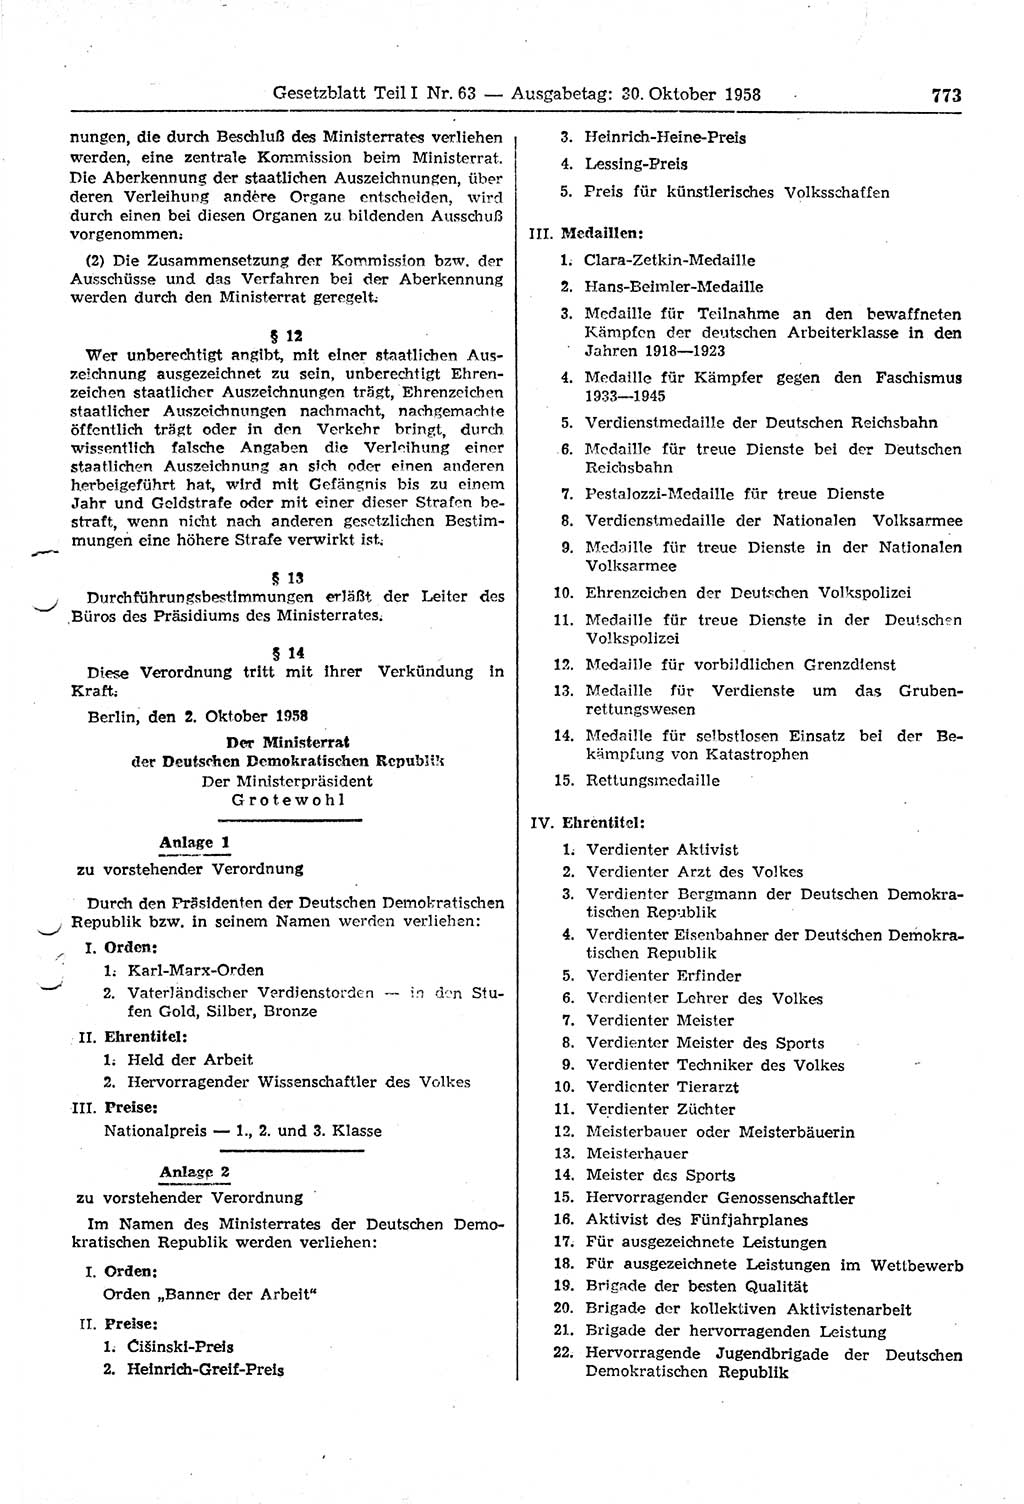 Gesetzblatt (GBl.) der Deutschen Demokratischen Republik (DDR) Teil Ⅰ 1958, Seite 773 (GBl. DDR Ⅰ 1958, S. 773)